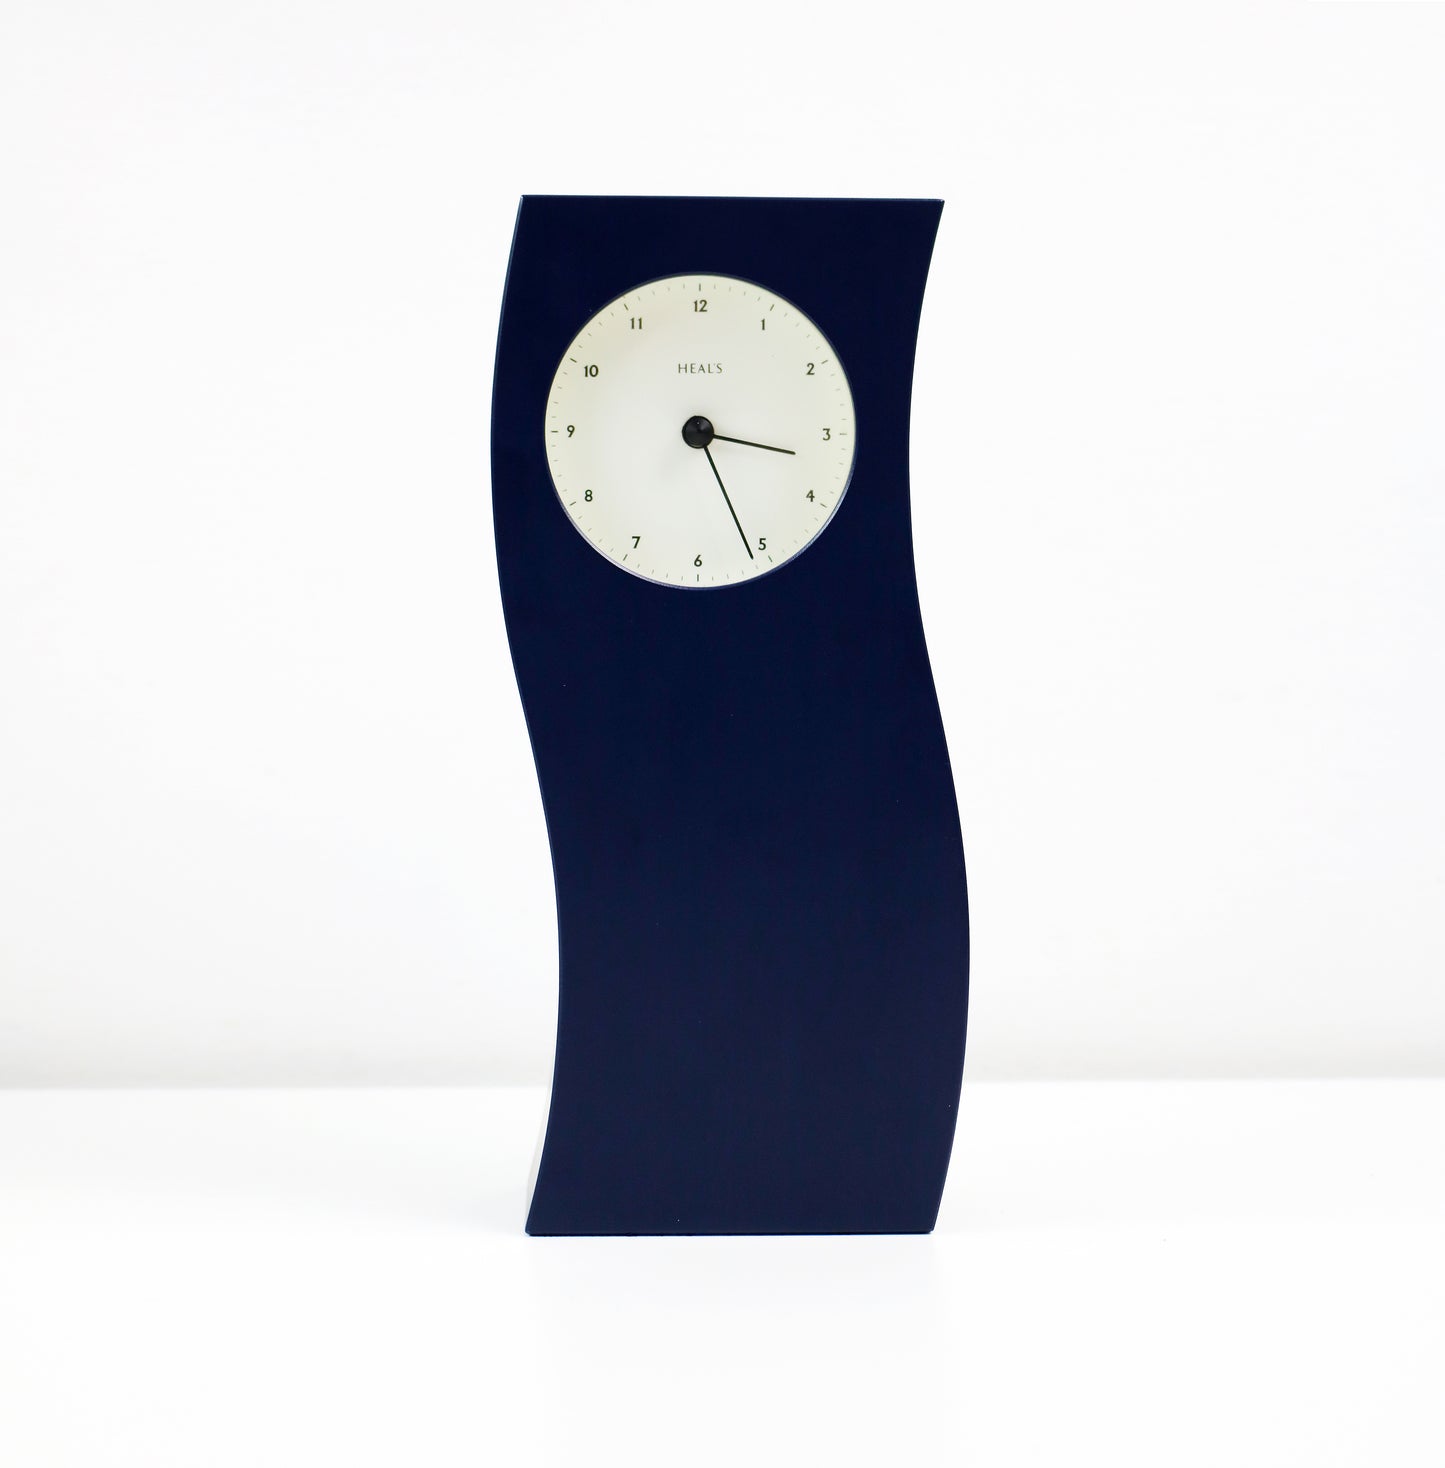 Postmodern mantel clock by Heals - 1990s vintage